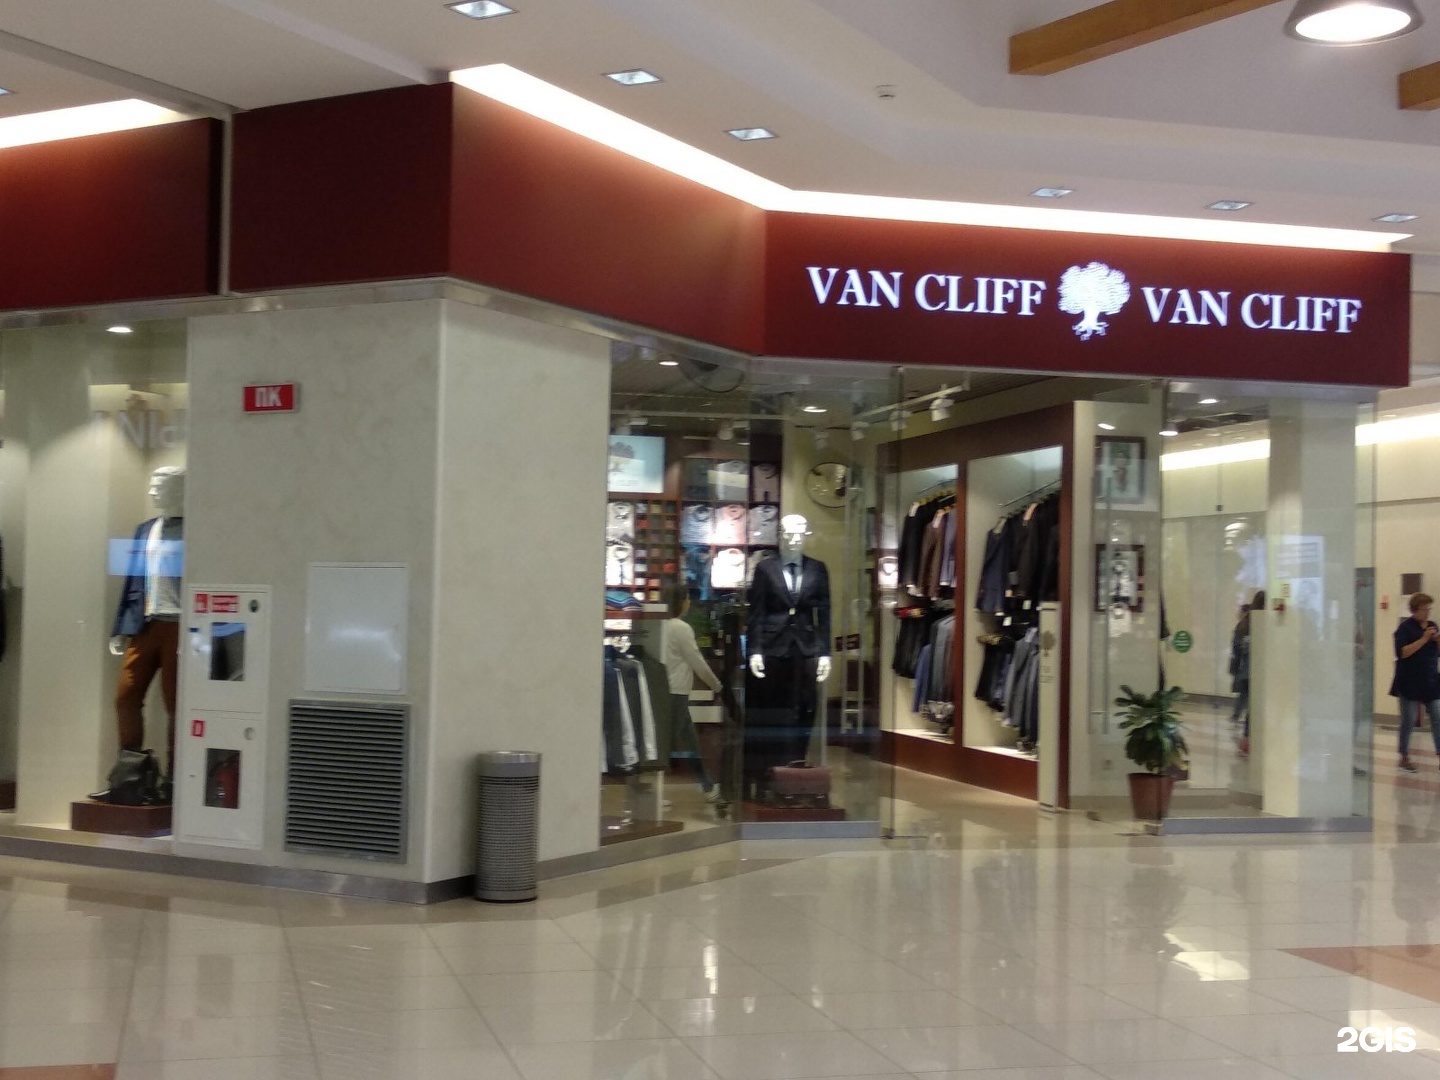 Магазин ван клиф. Van Cliff Пенза. Van Cliff магазин мужской одежды Москва. Пальто фирмы van Cliff. Van Cliff фото магазина.